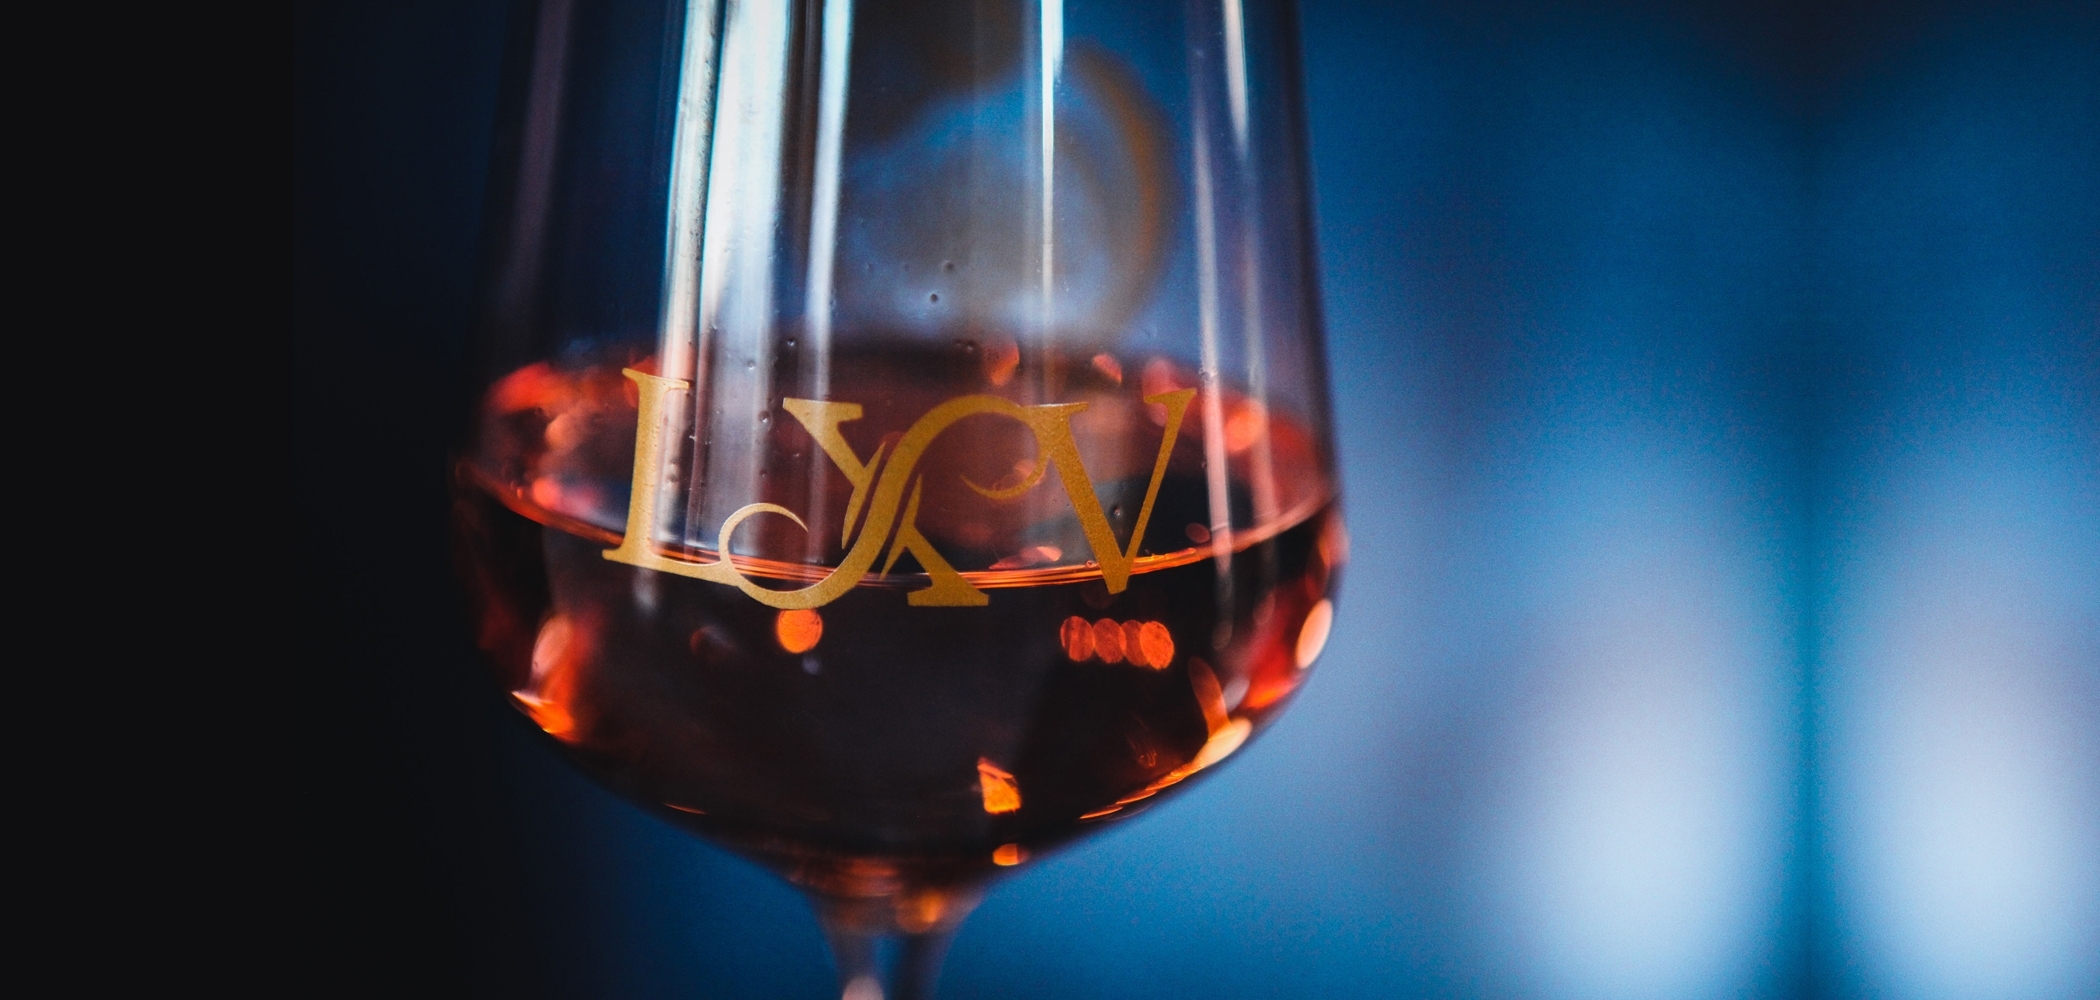 LXV Rose Wine of Cabernet Franc